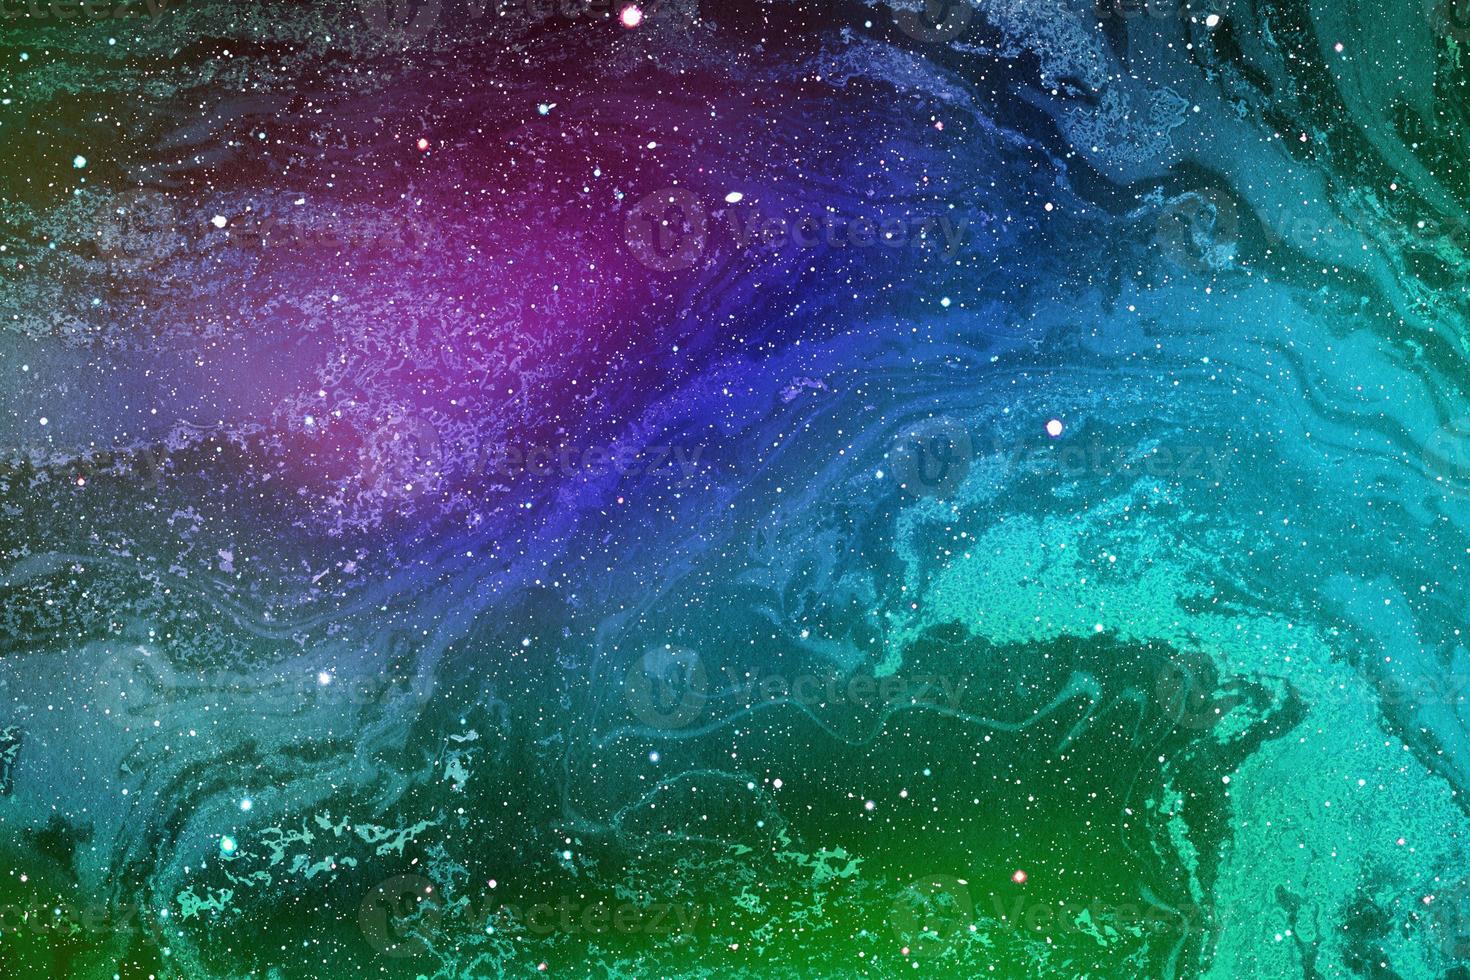 bakgrund av abstrakta galaxer med stjärnor och planeter med färgglada himmelsmotiv av universums nattljusutrymme foto